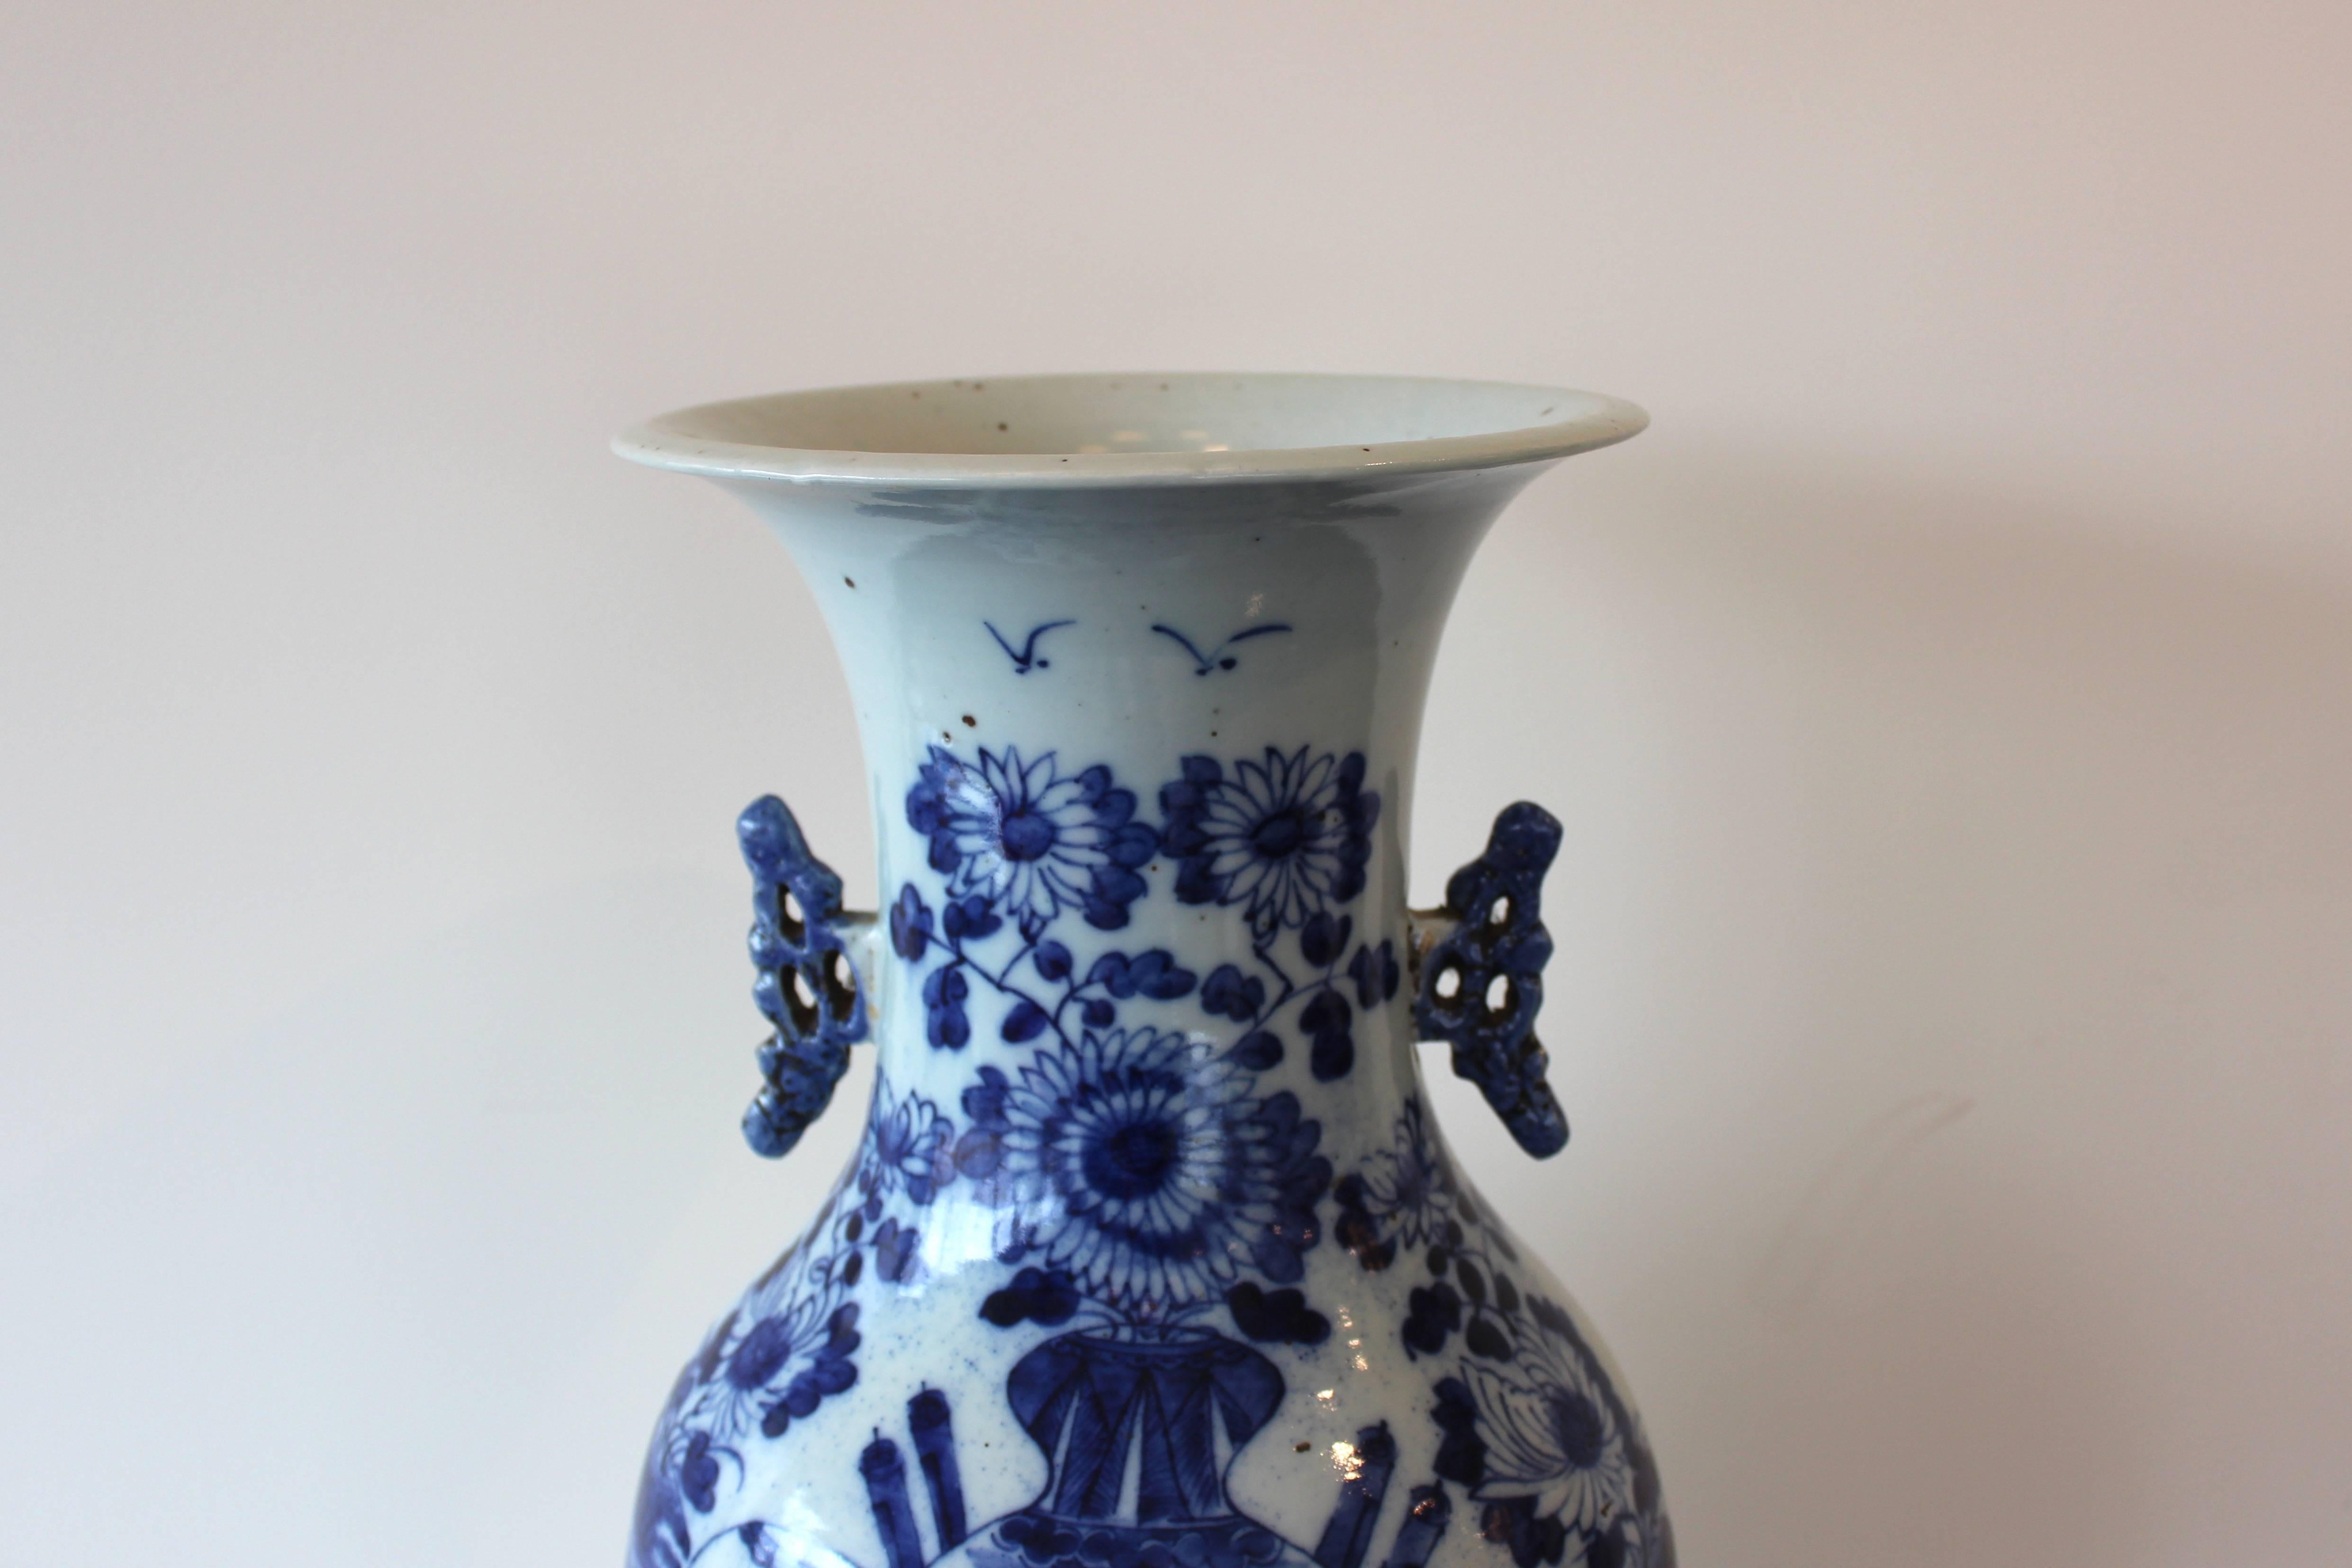 Chinesische Vase aus blauer und weißer Keramik.